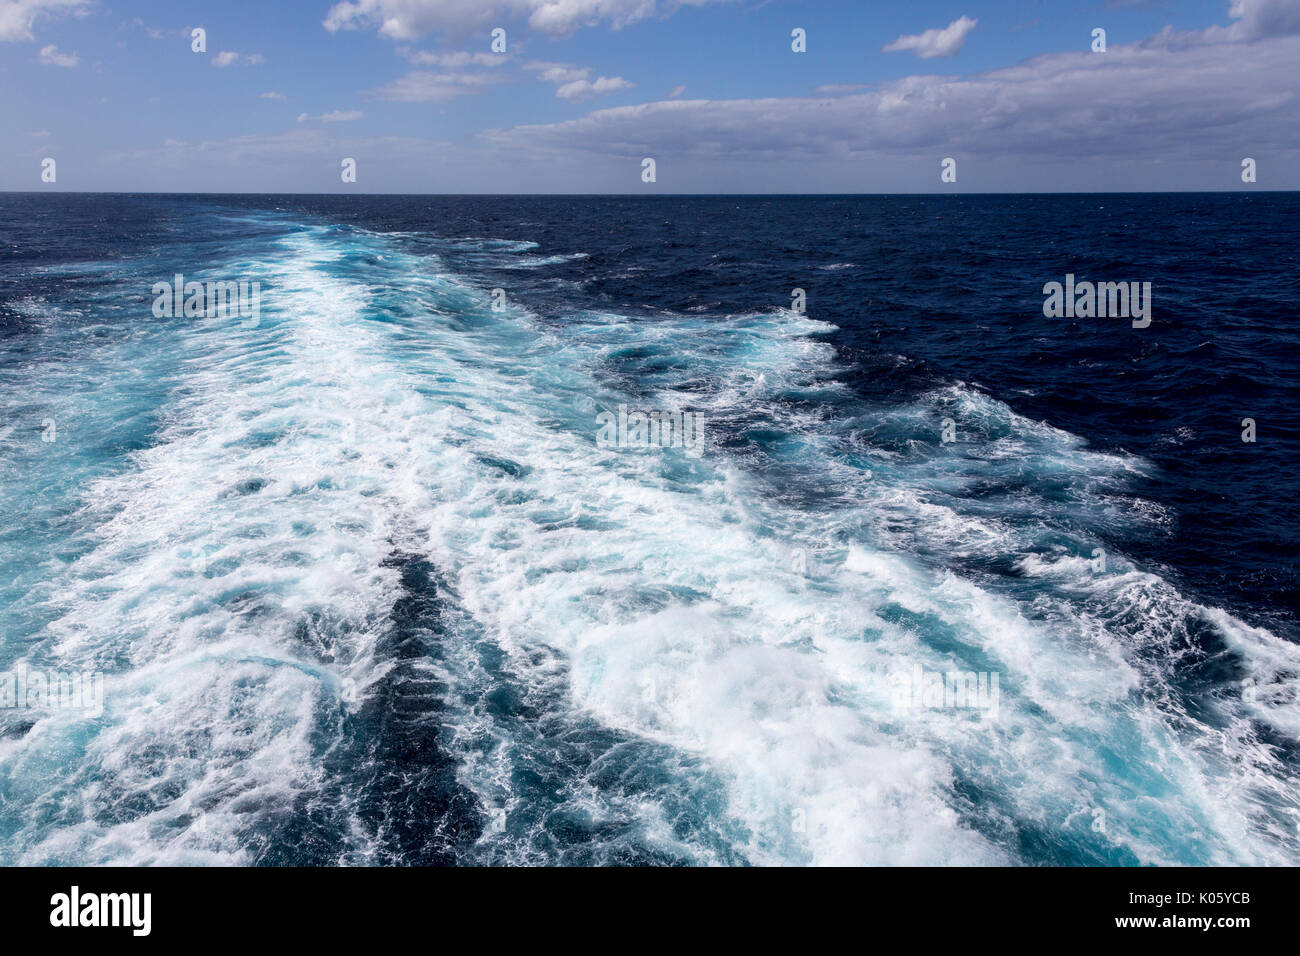 Una reactivación del buque en el Mar Caribe. El mar tranquilo, lejos del horizonte. Foto de stock